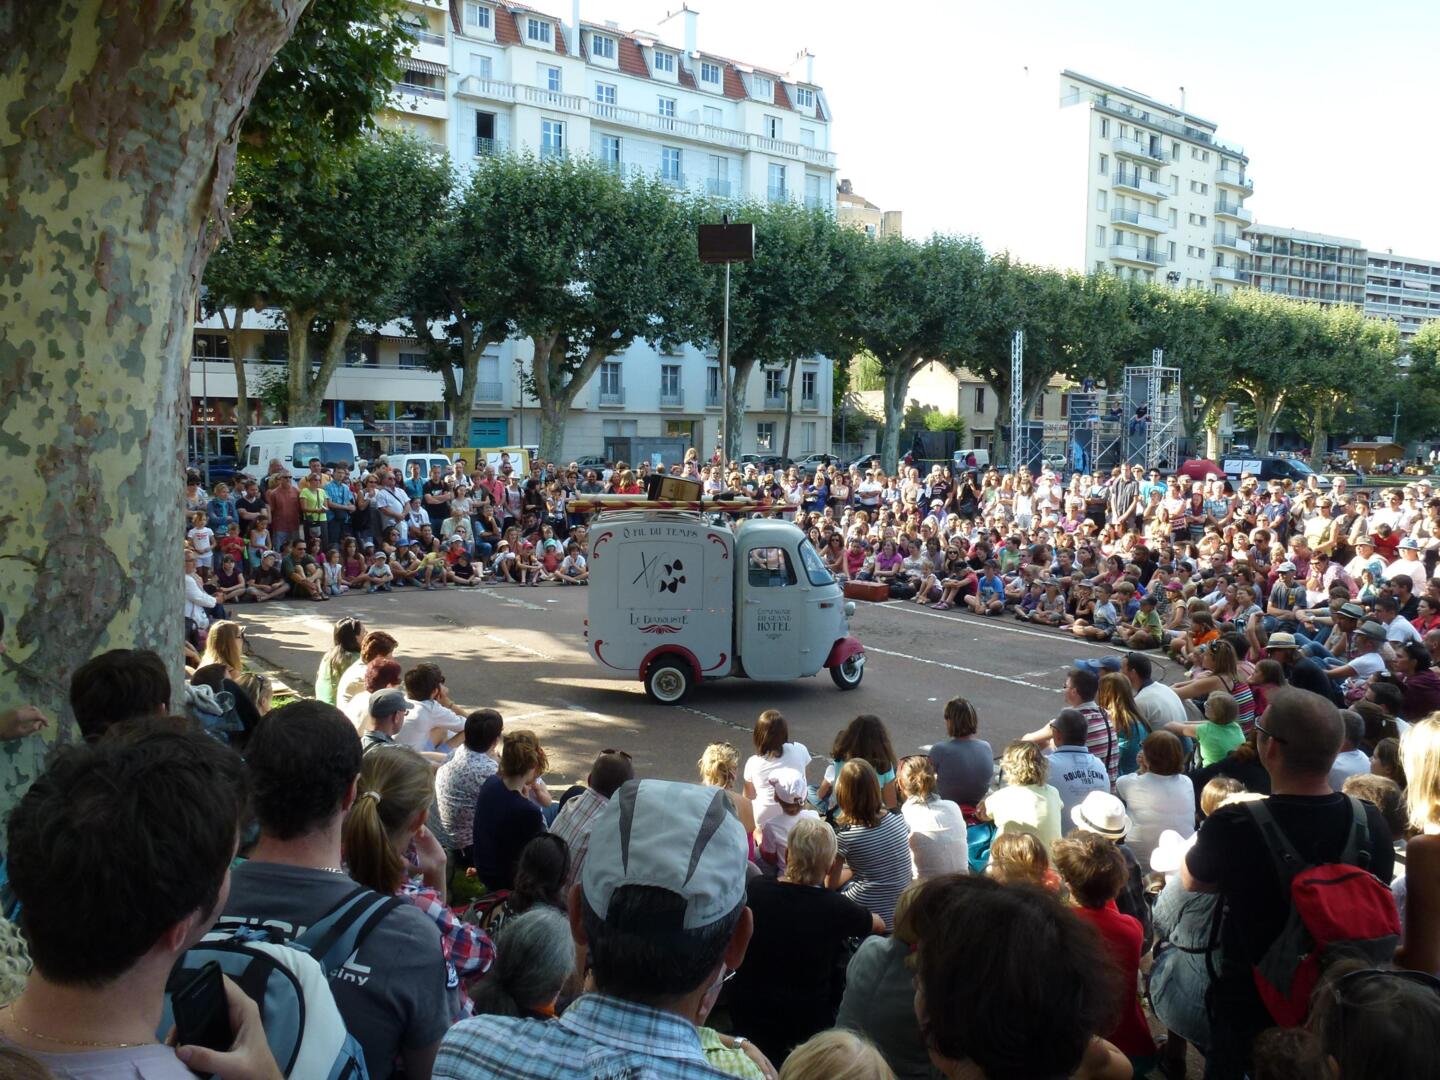 Público cautivado asistiendo a una actuación callejera en el festival 'Chalon dans la Rue', con un vehículo de espectáculo estacionado frente a los espectadores sentados.